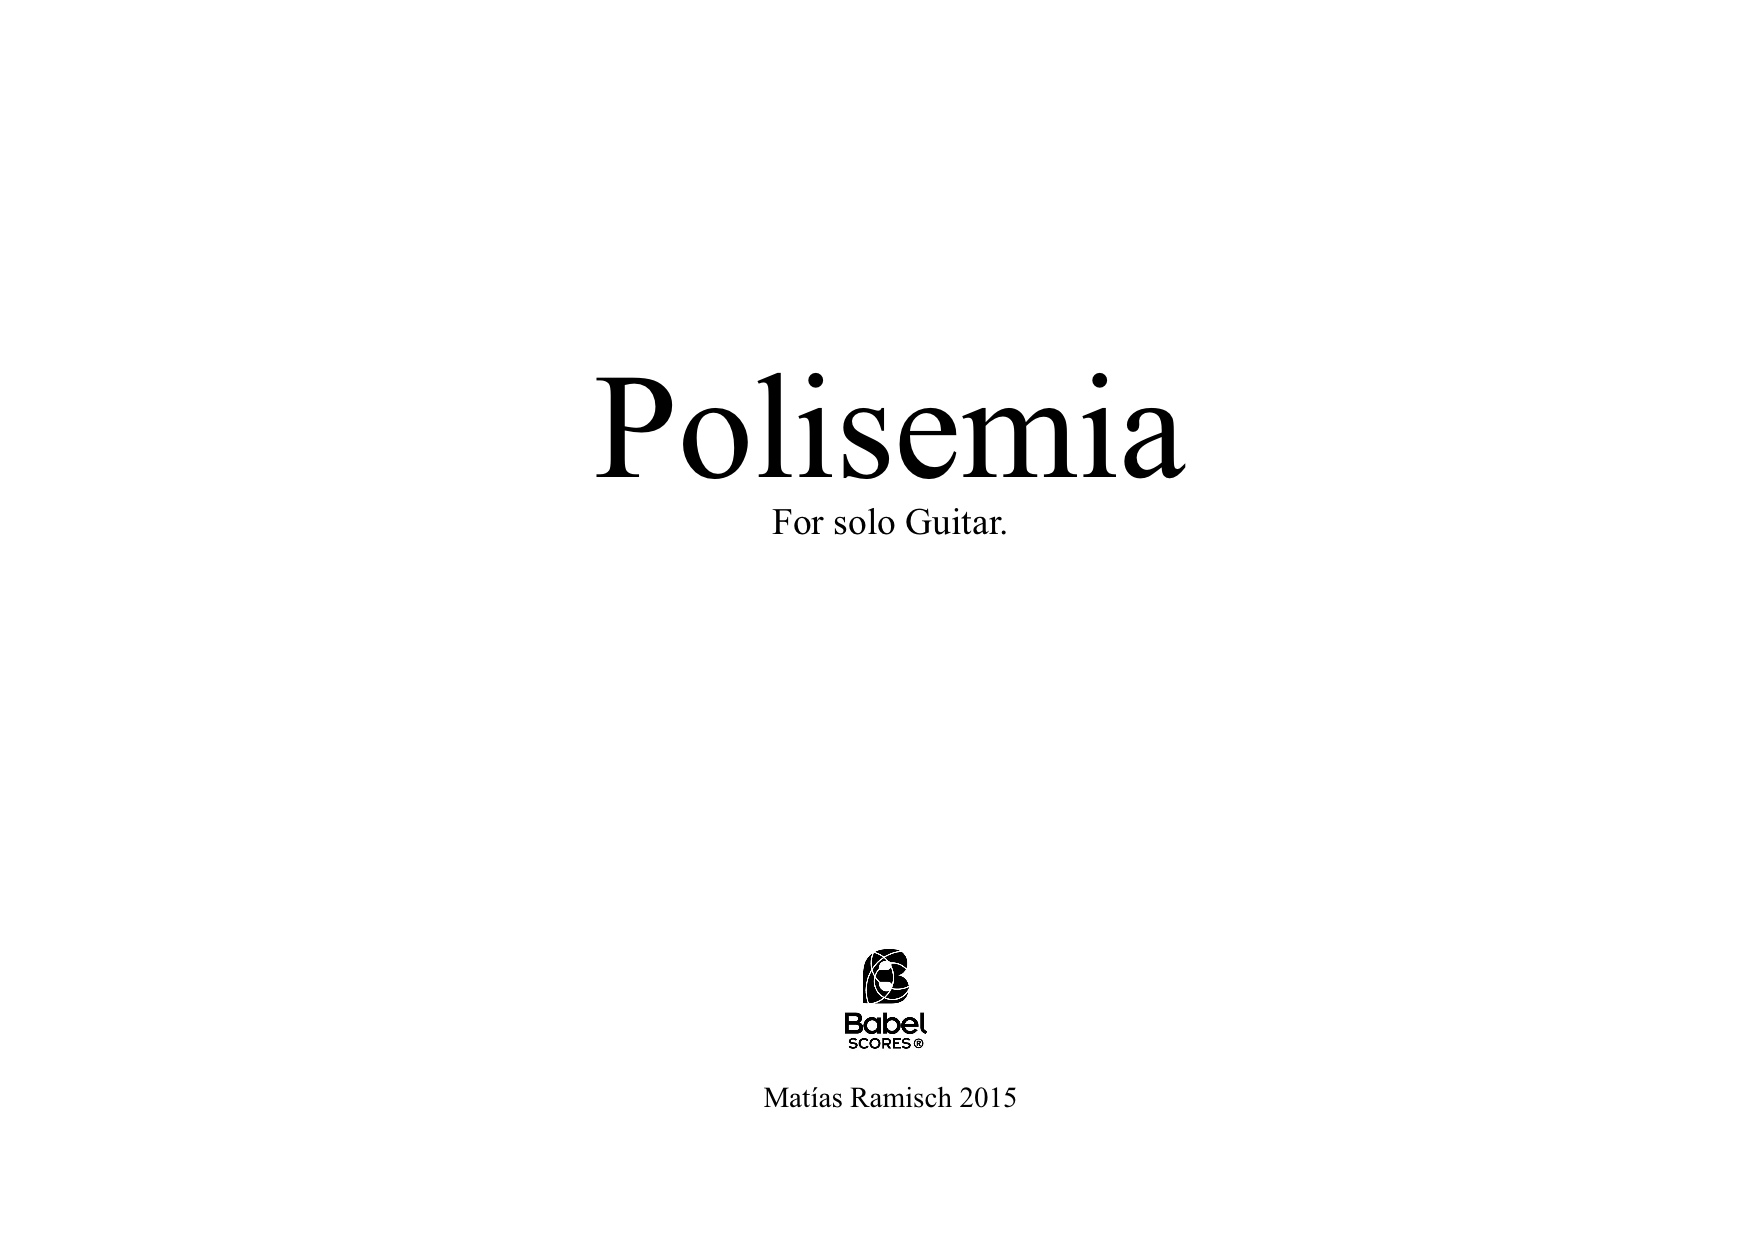 Polisemia A4 z 3 1 733